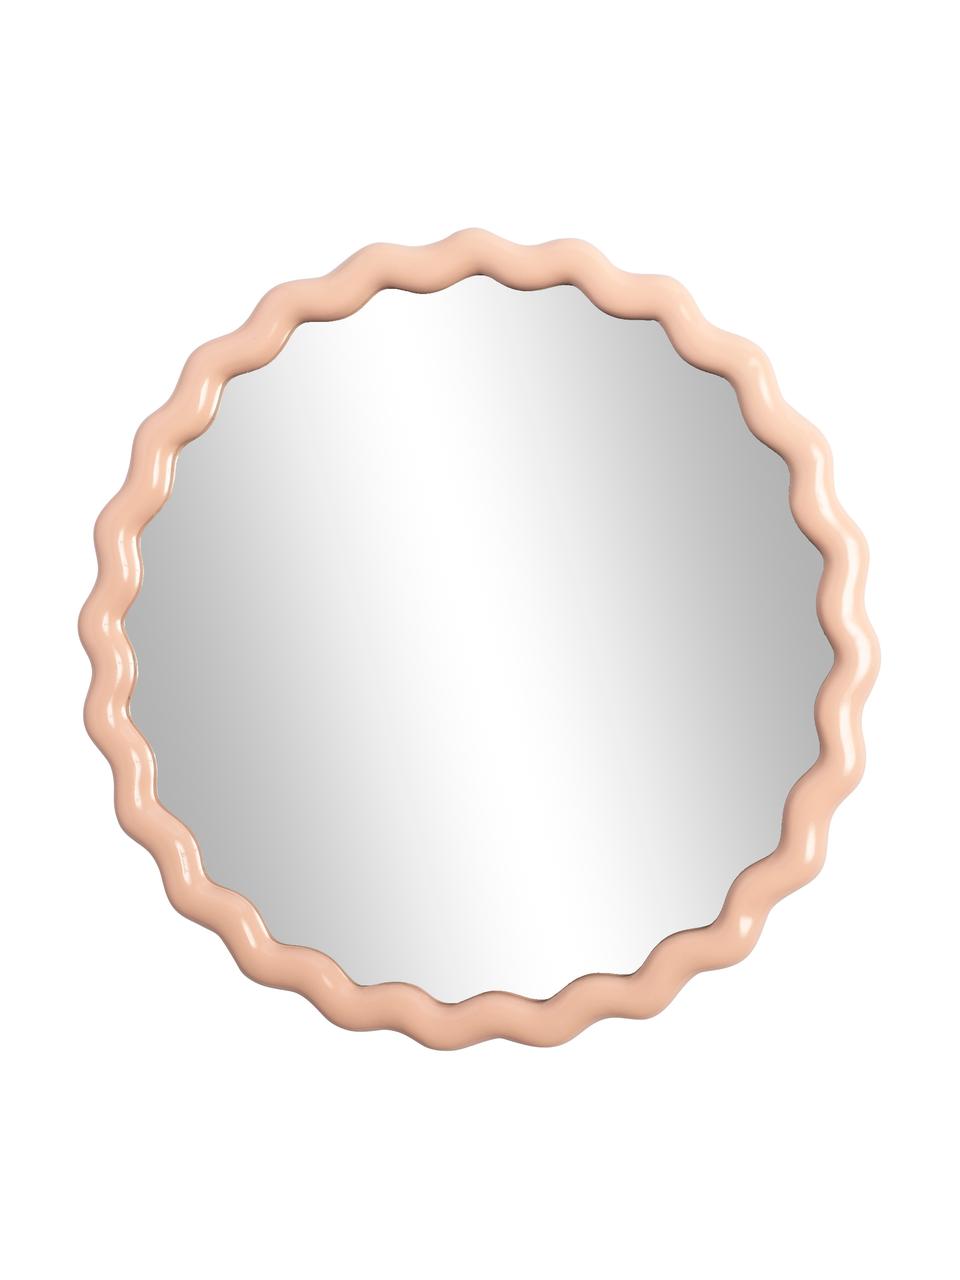 Okrągłe lustro ścienne Zigzag, Pastelowy beż, Ø 50 cm